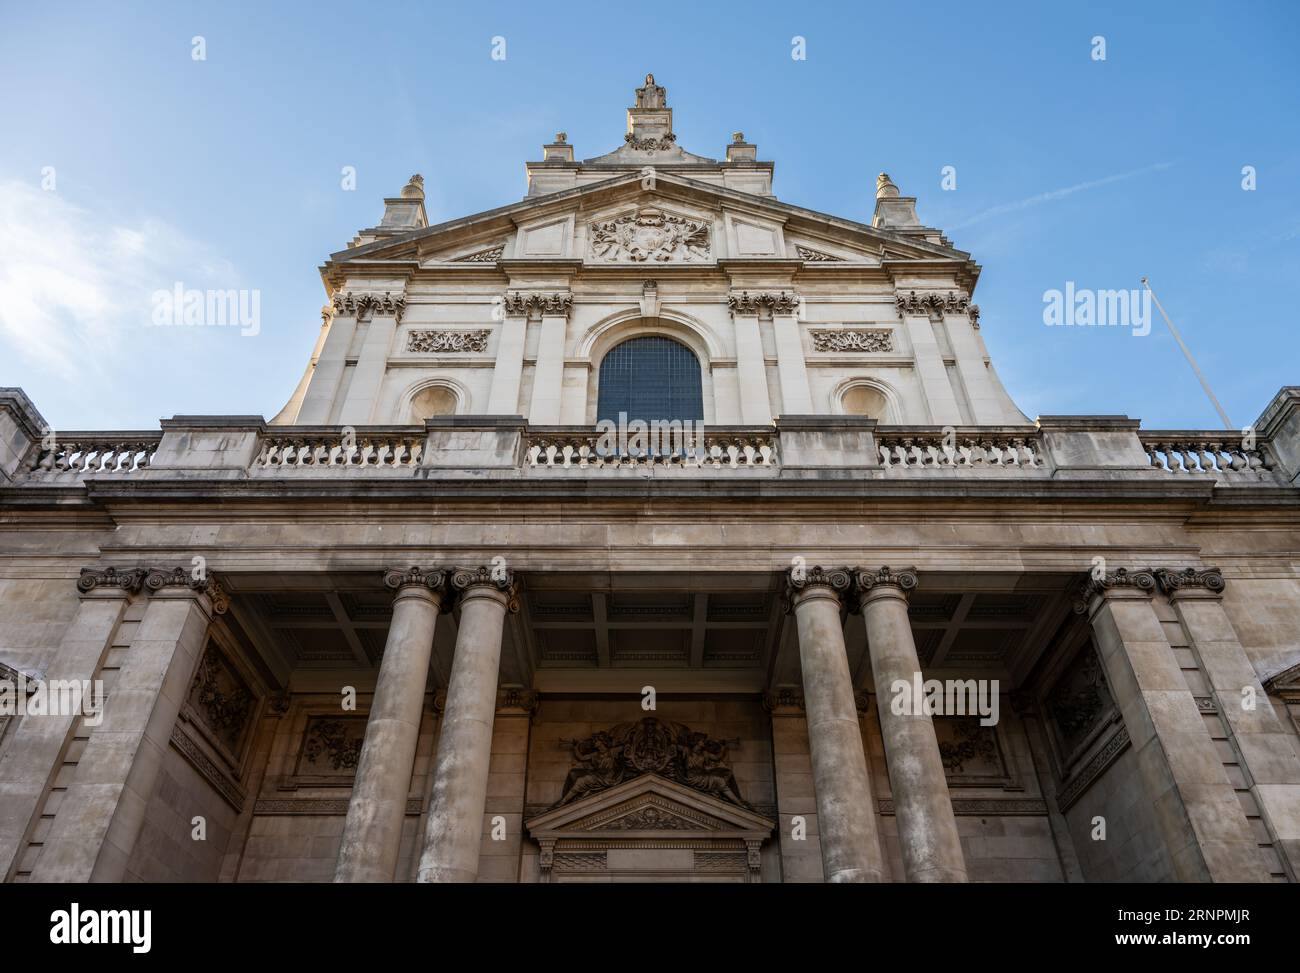 Londra, Regno Unito: London Oratory o Brompton Oratory una chiesa cattolica romana in Brompton Road tra Knightsbridge e South Kensington. Foto Stock